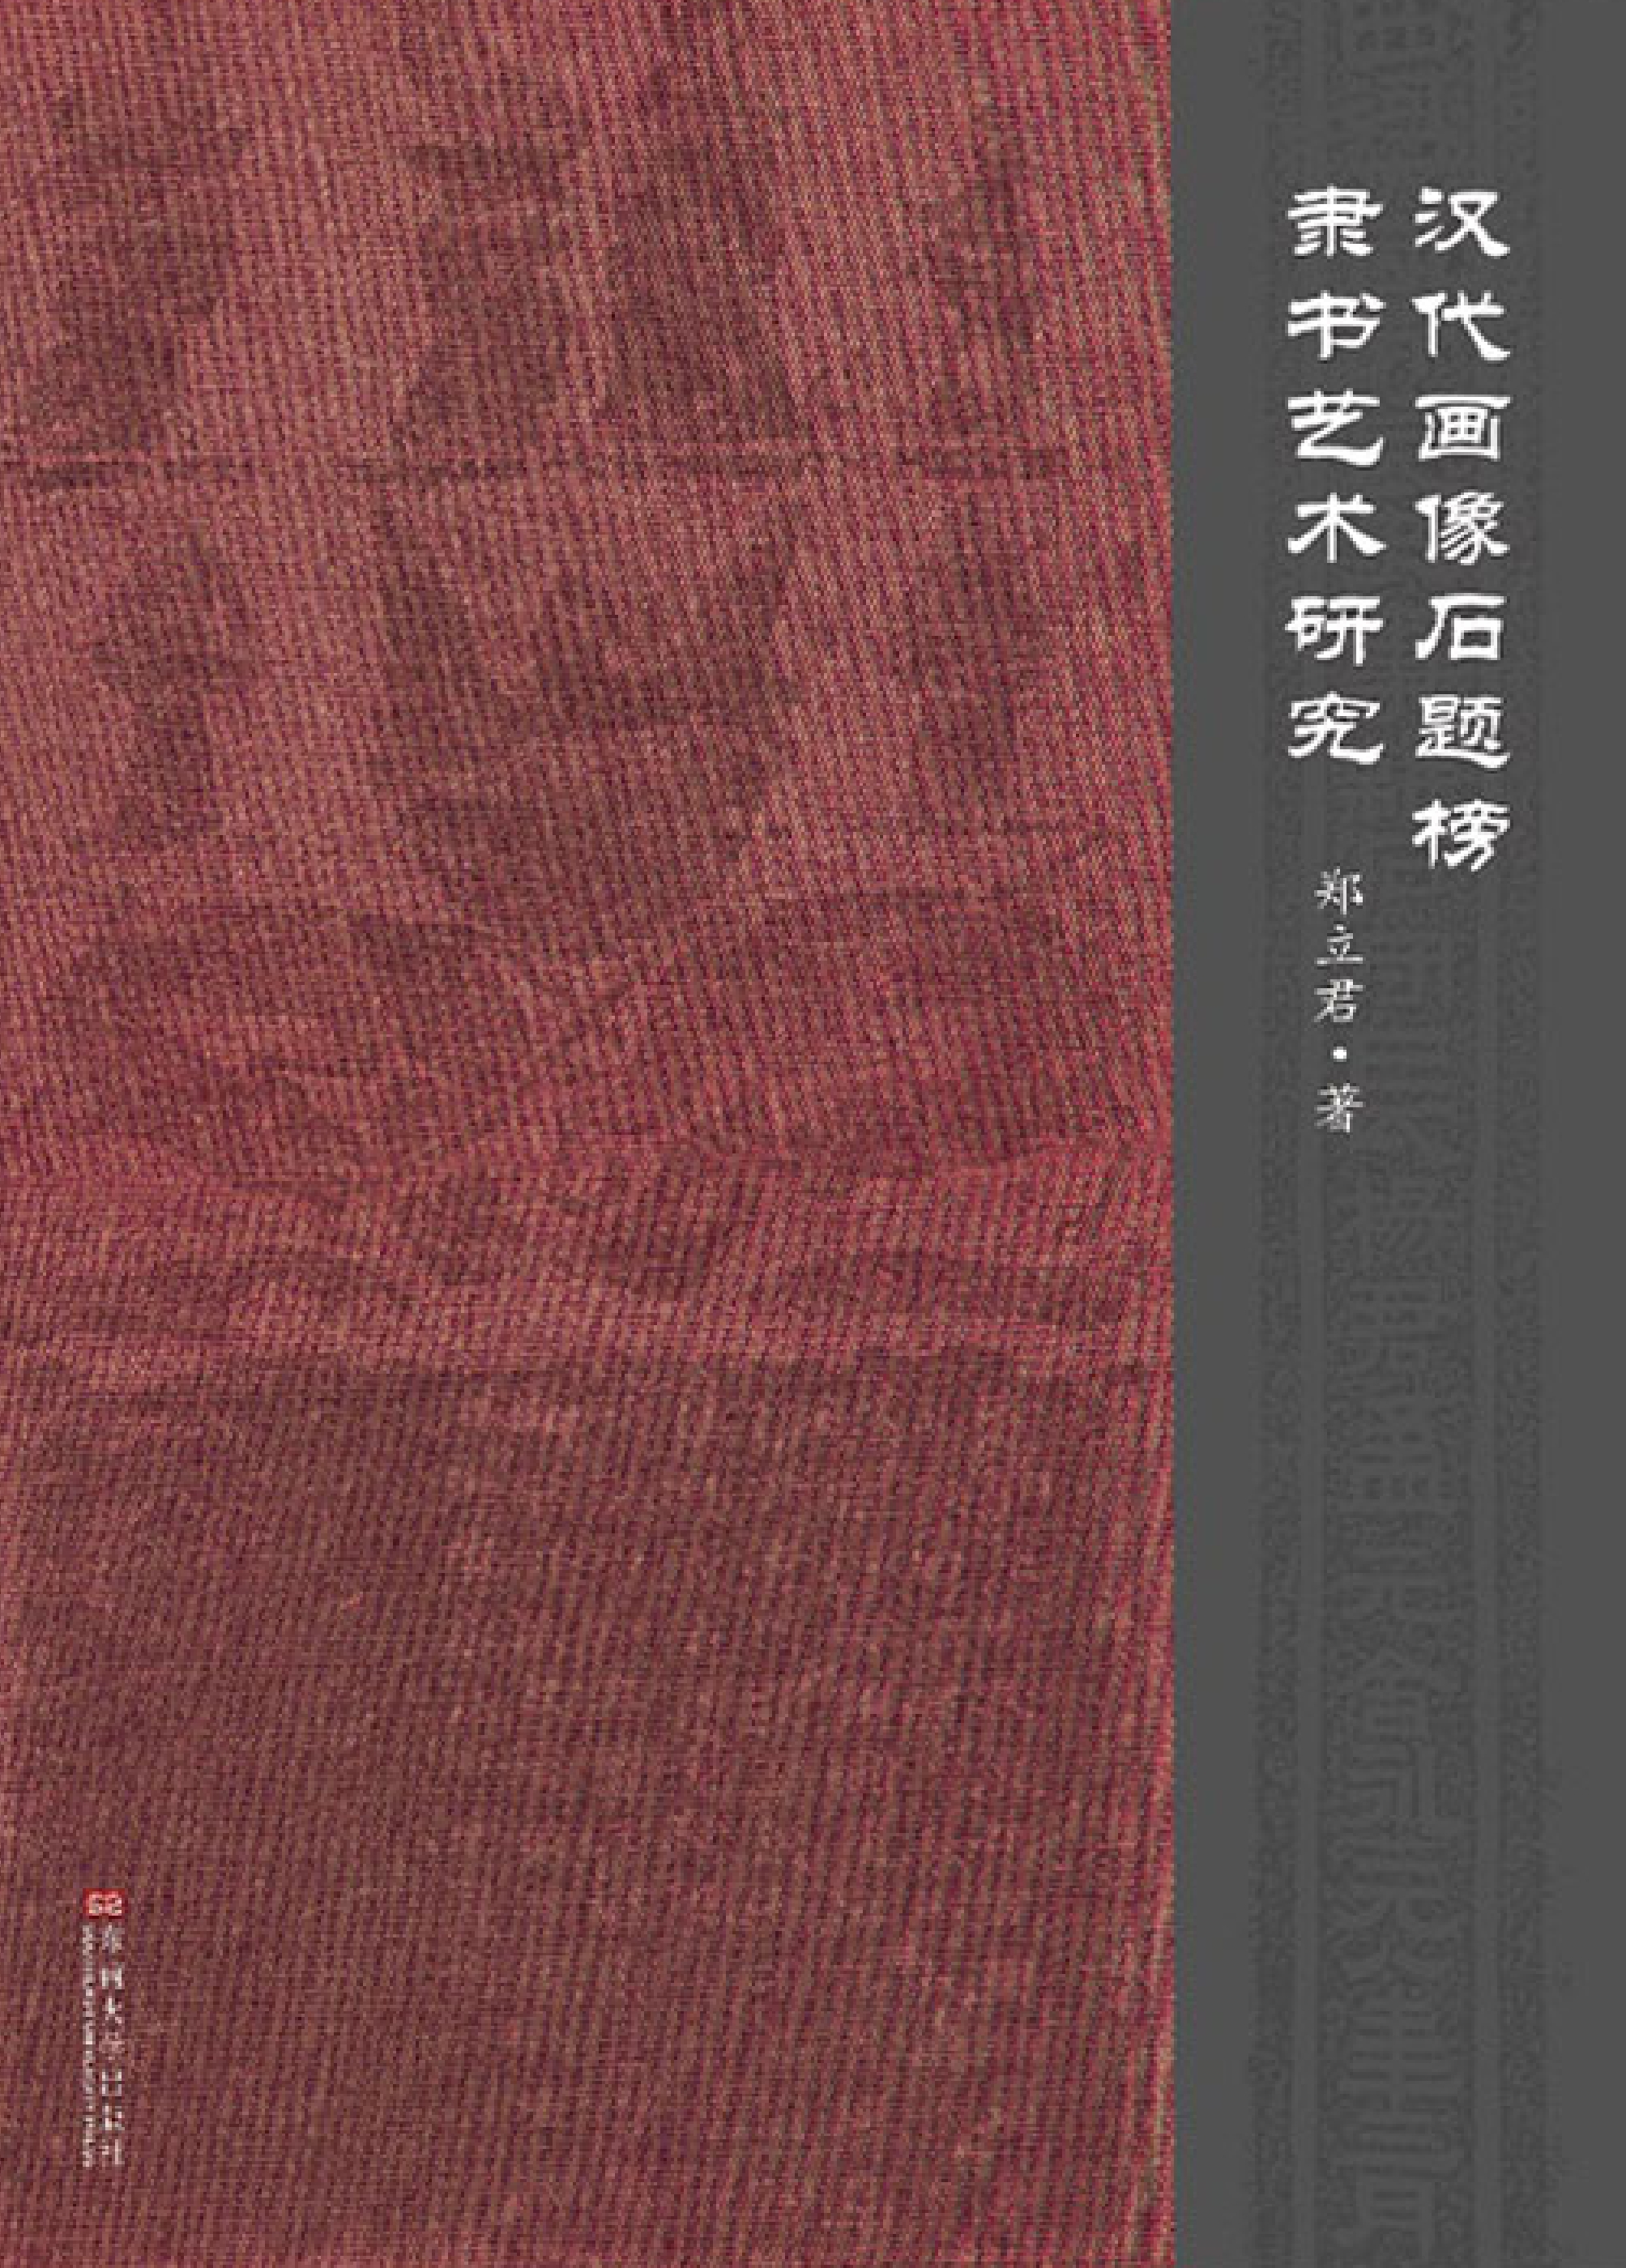 汉代画像石题榜隶书艺术研究